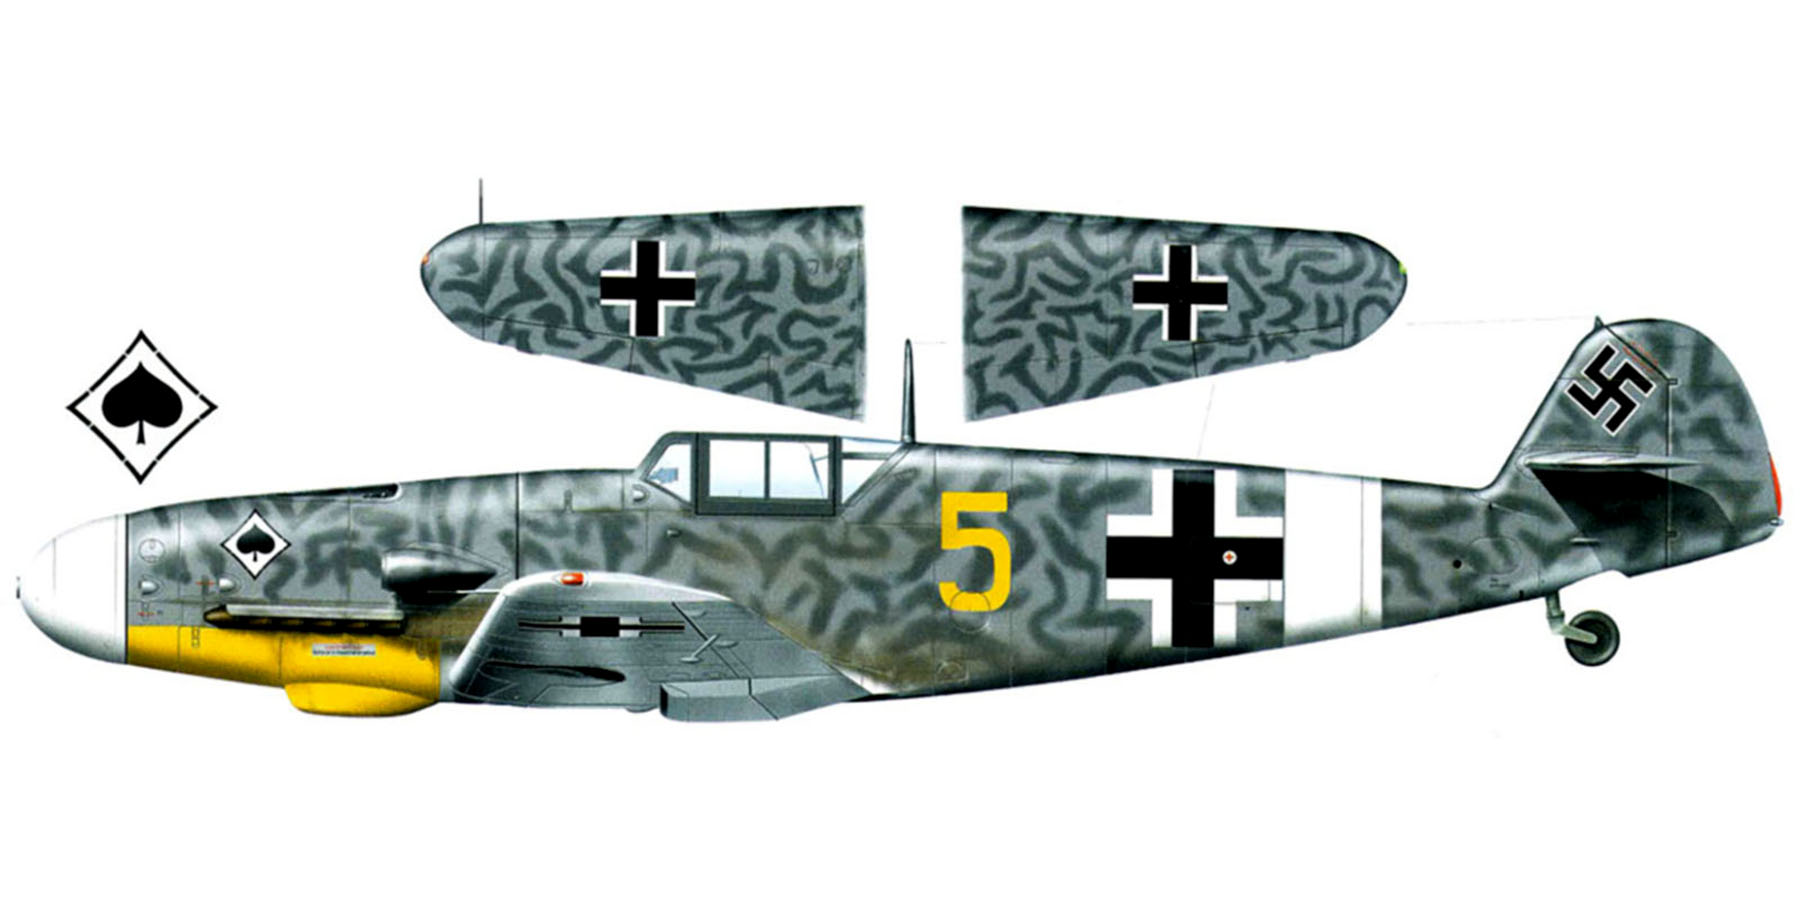 Messerschmitt Bf 109G2 3.JG53 Yellow 5 Bizerte Tunisia Dec 1942 0A 2